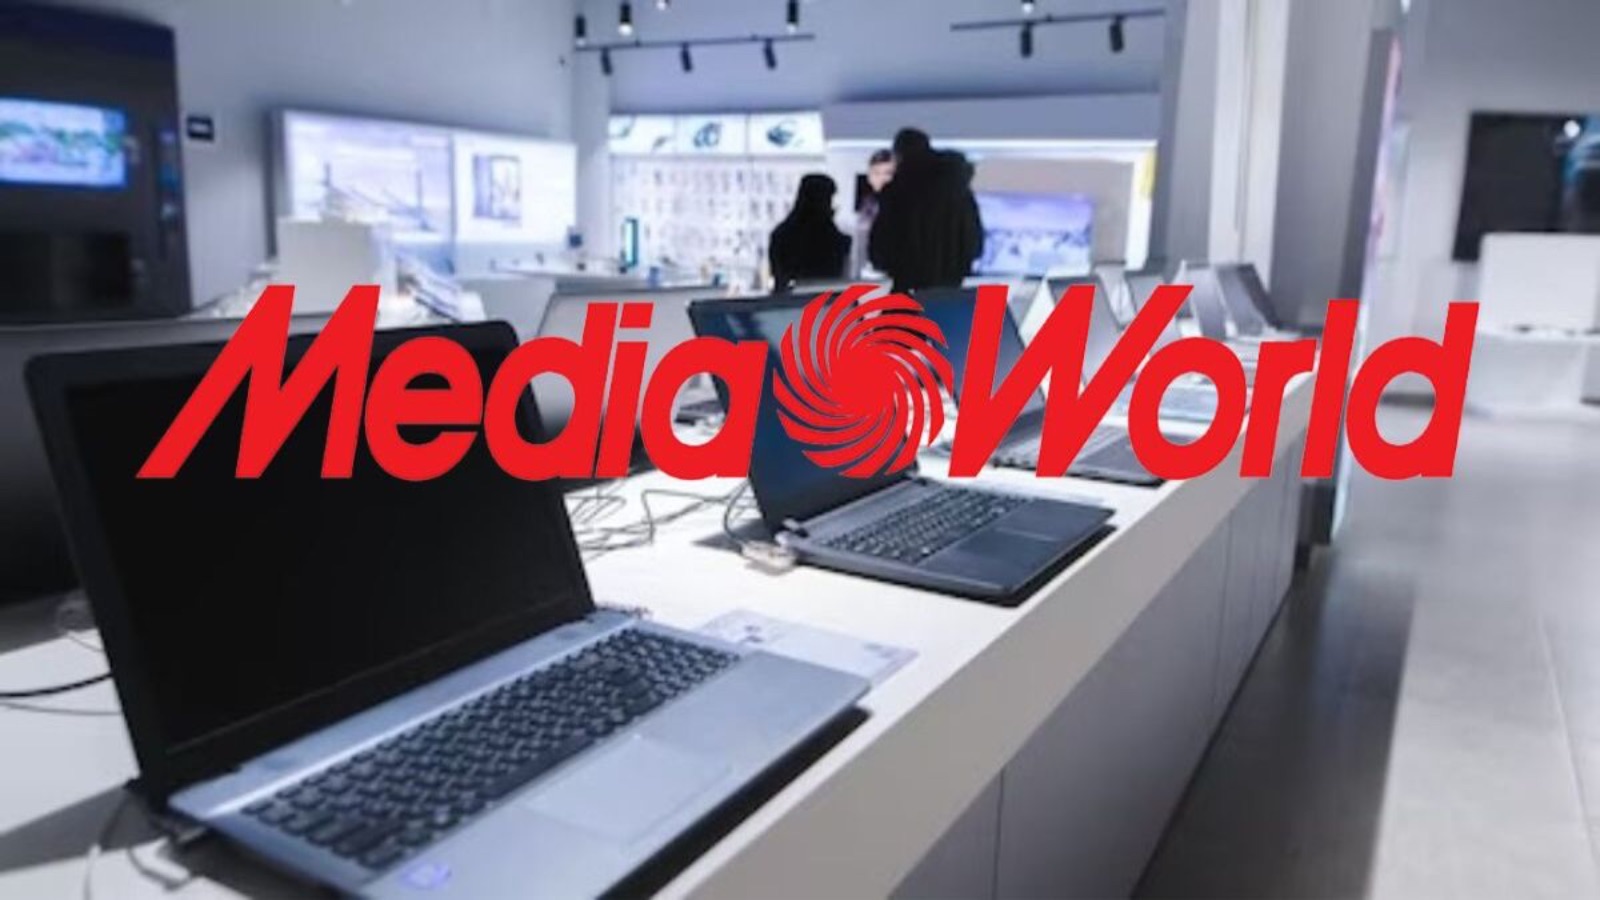 MediaWorld, le offerte del volantino al 60% di sconto contro Euronics